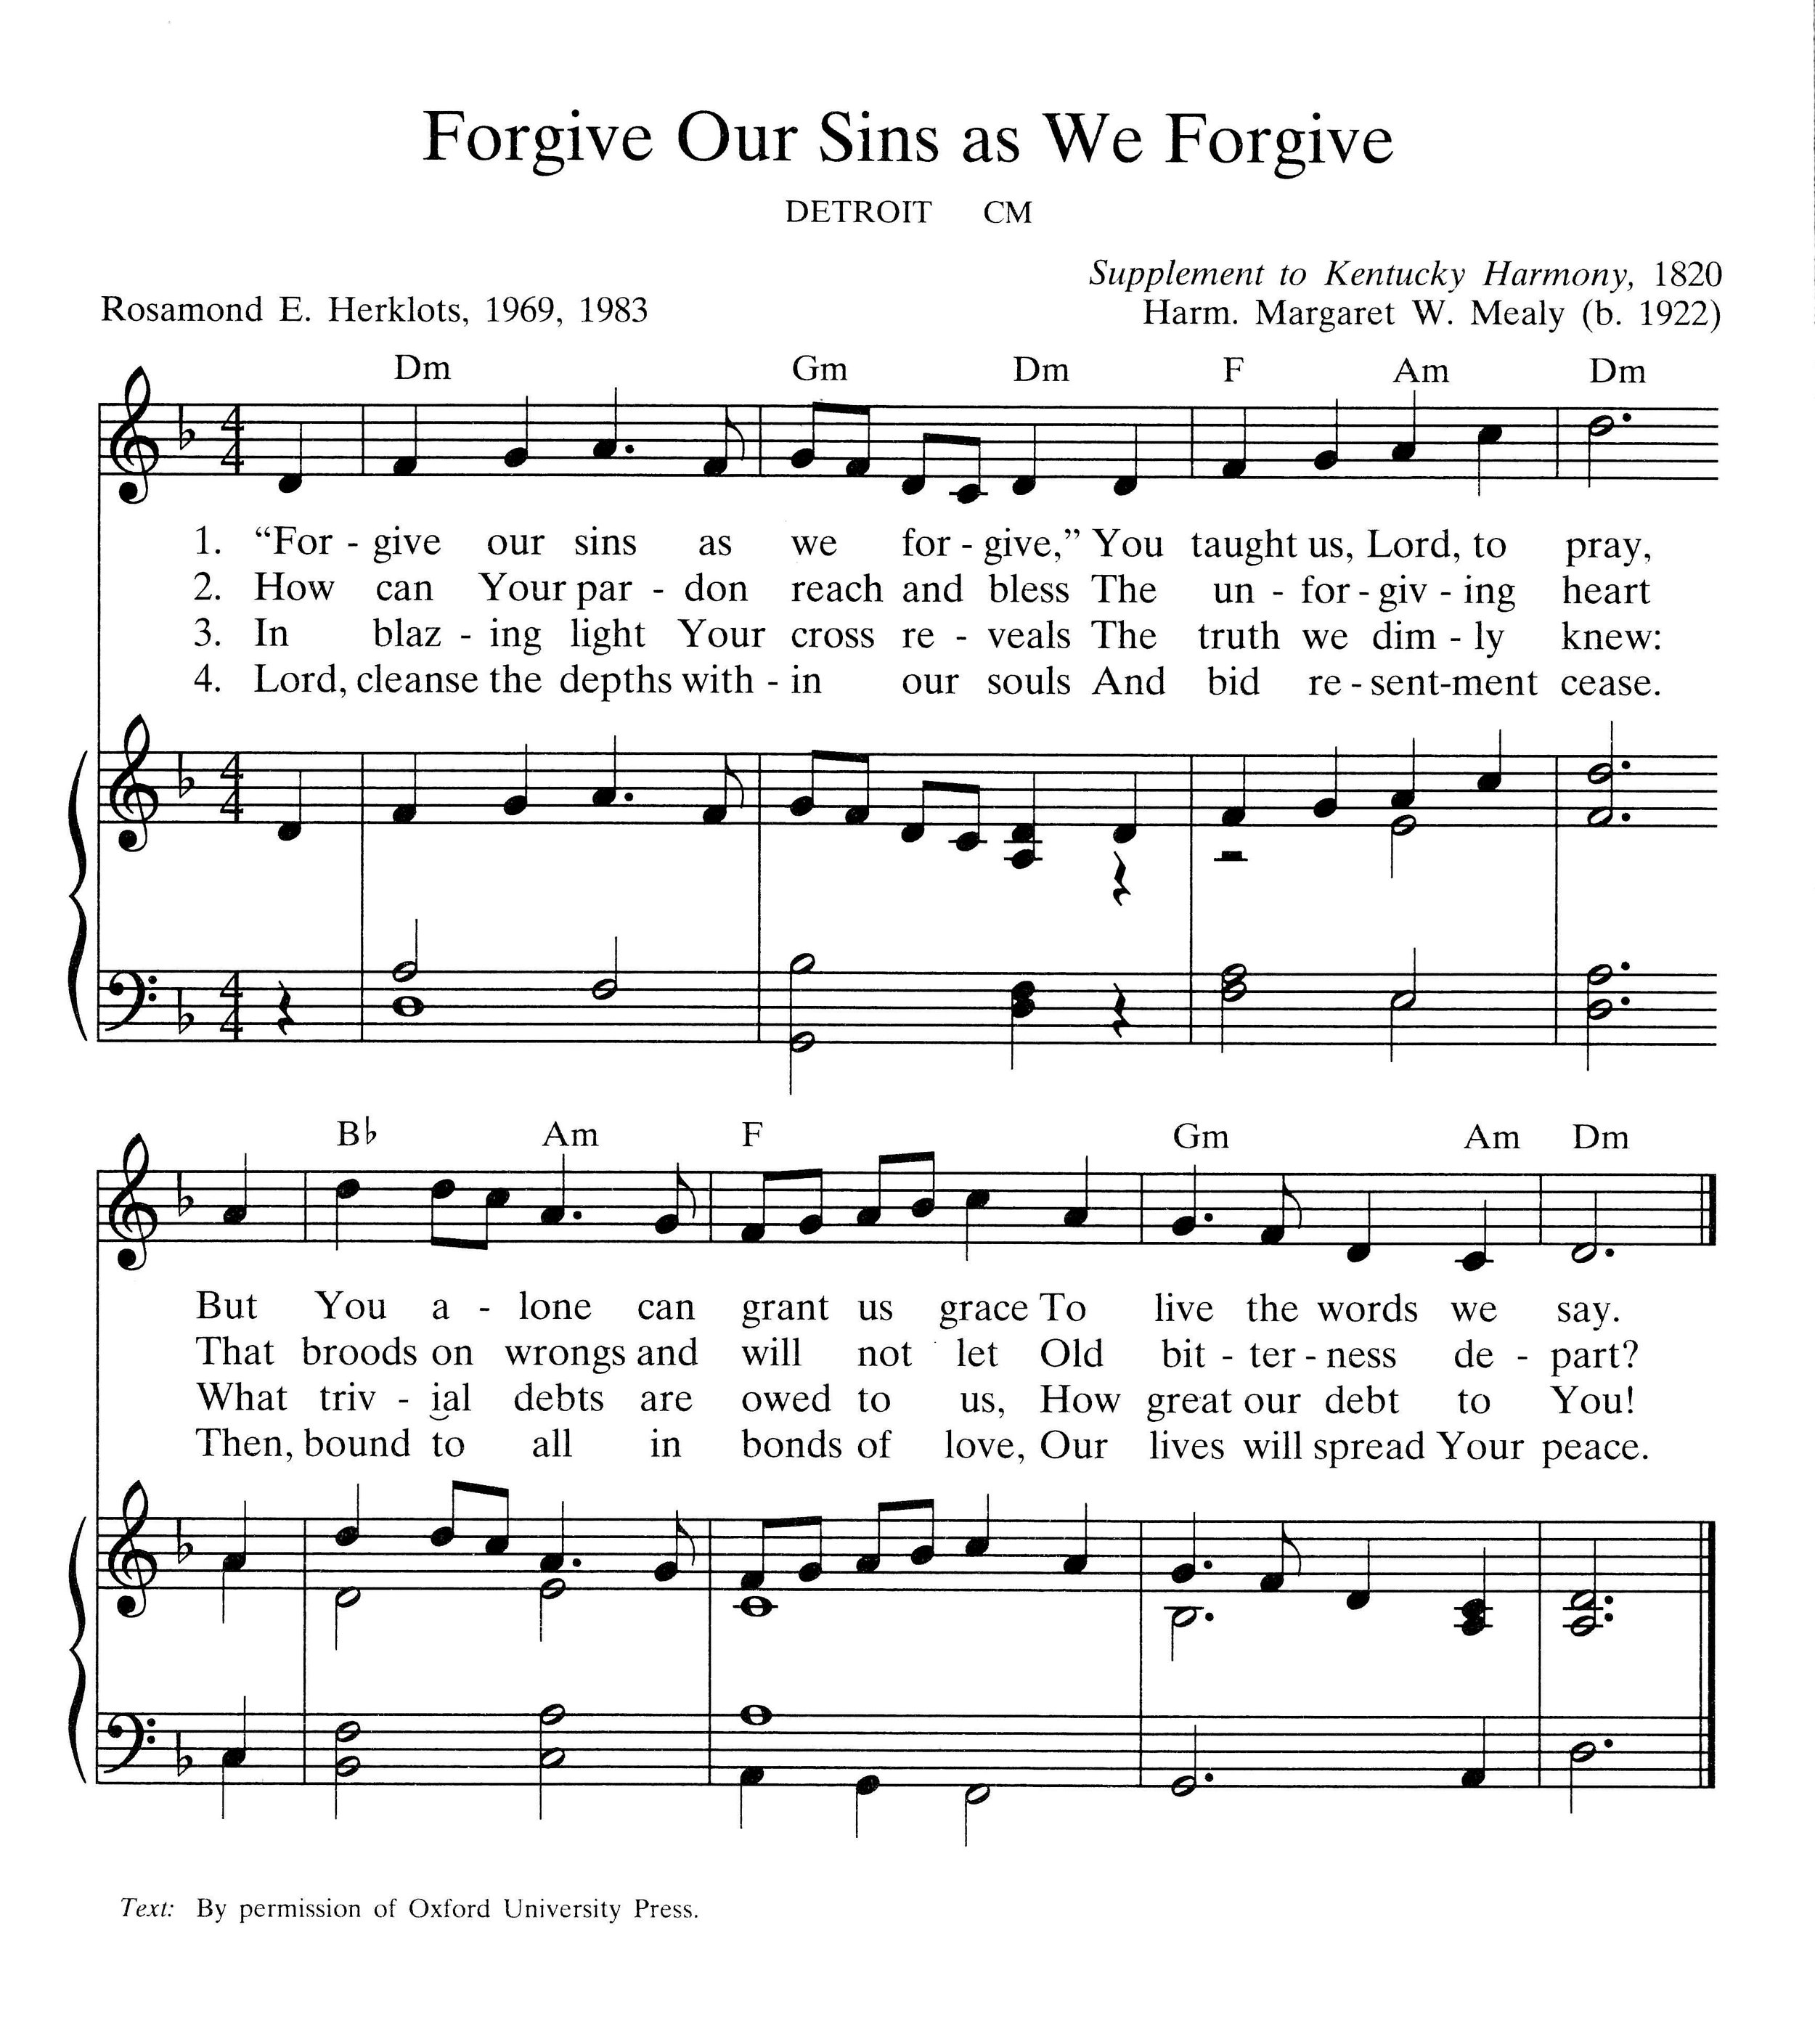 Forgive Our Sins as We Forgive.jpg